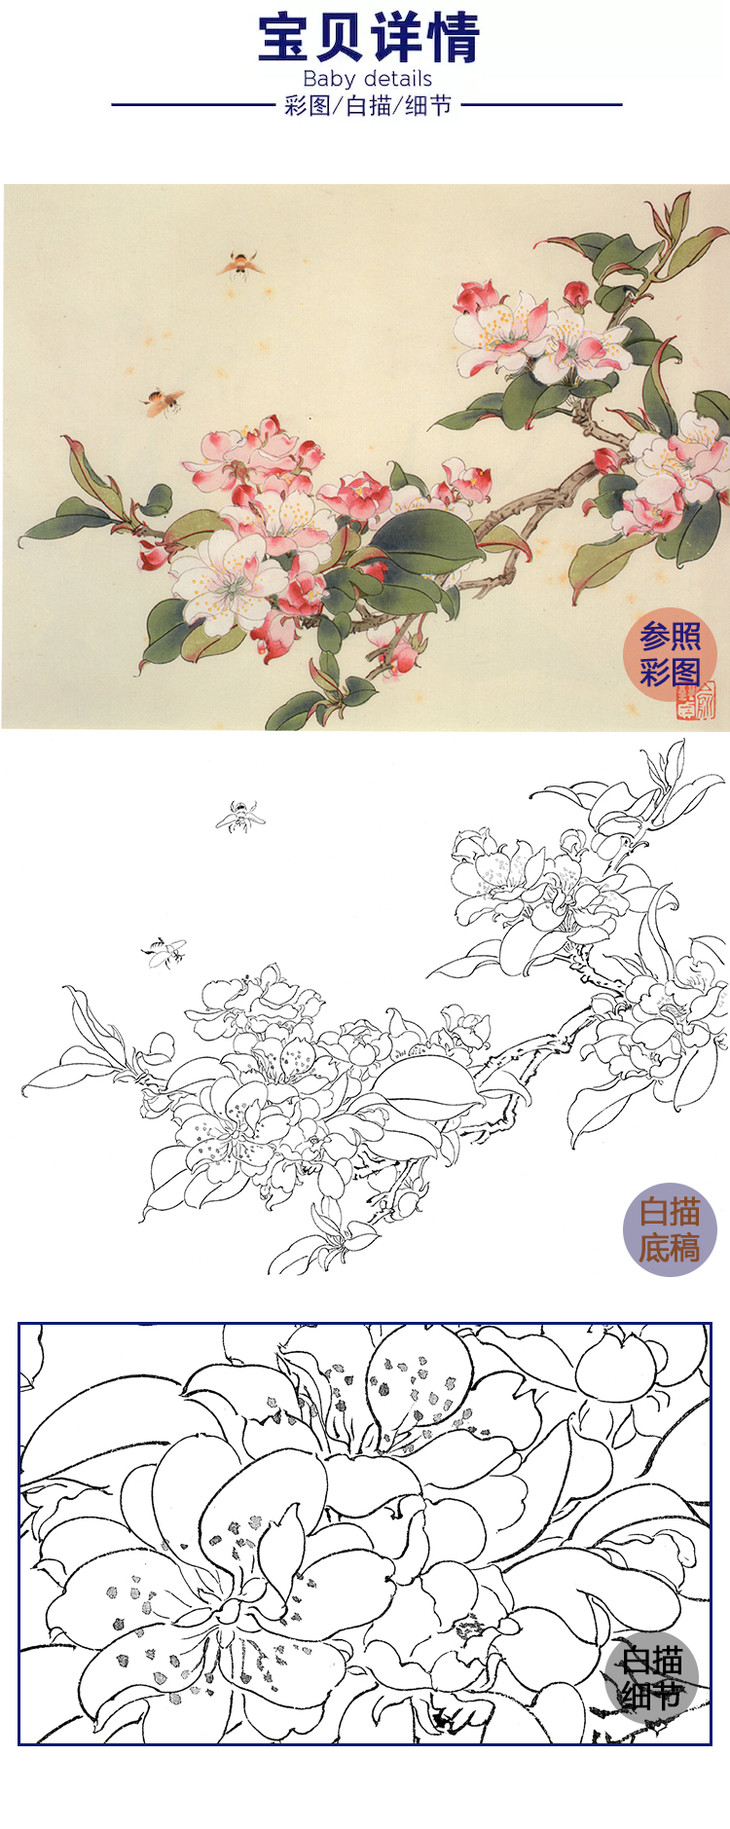 俞致贞花卉小品西府海棠多种白描尺寸可选jv46